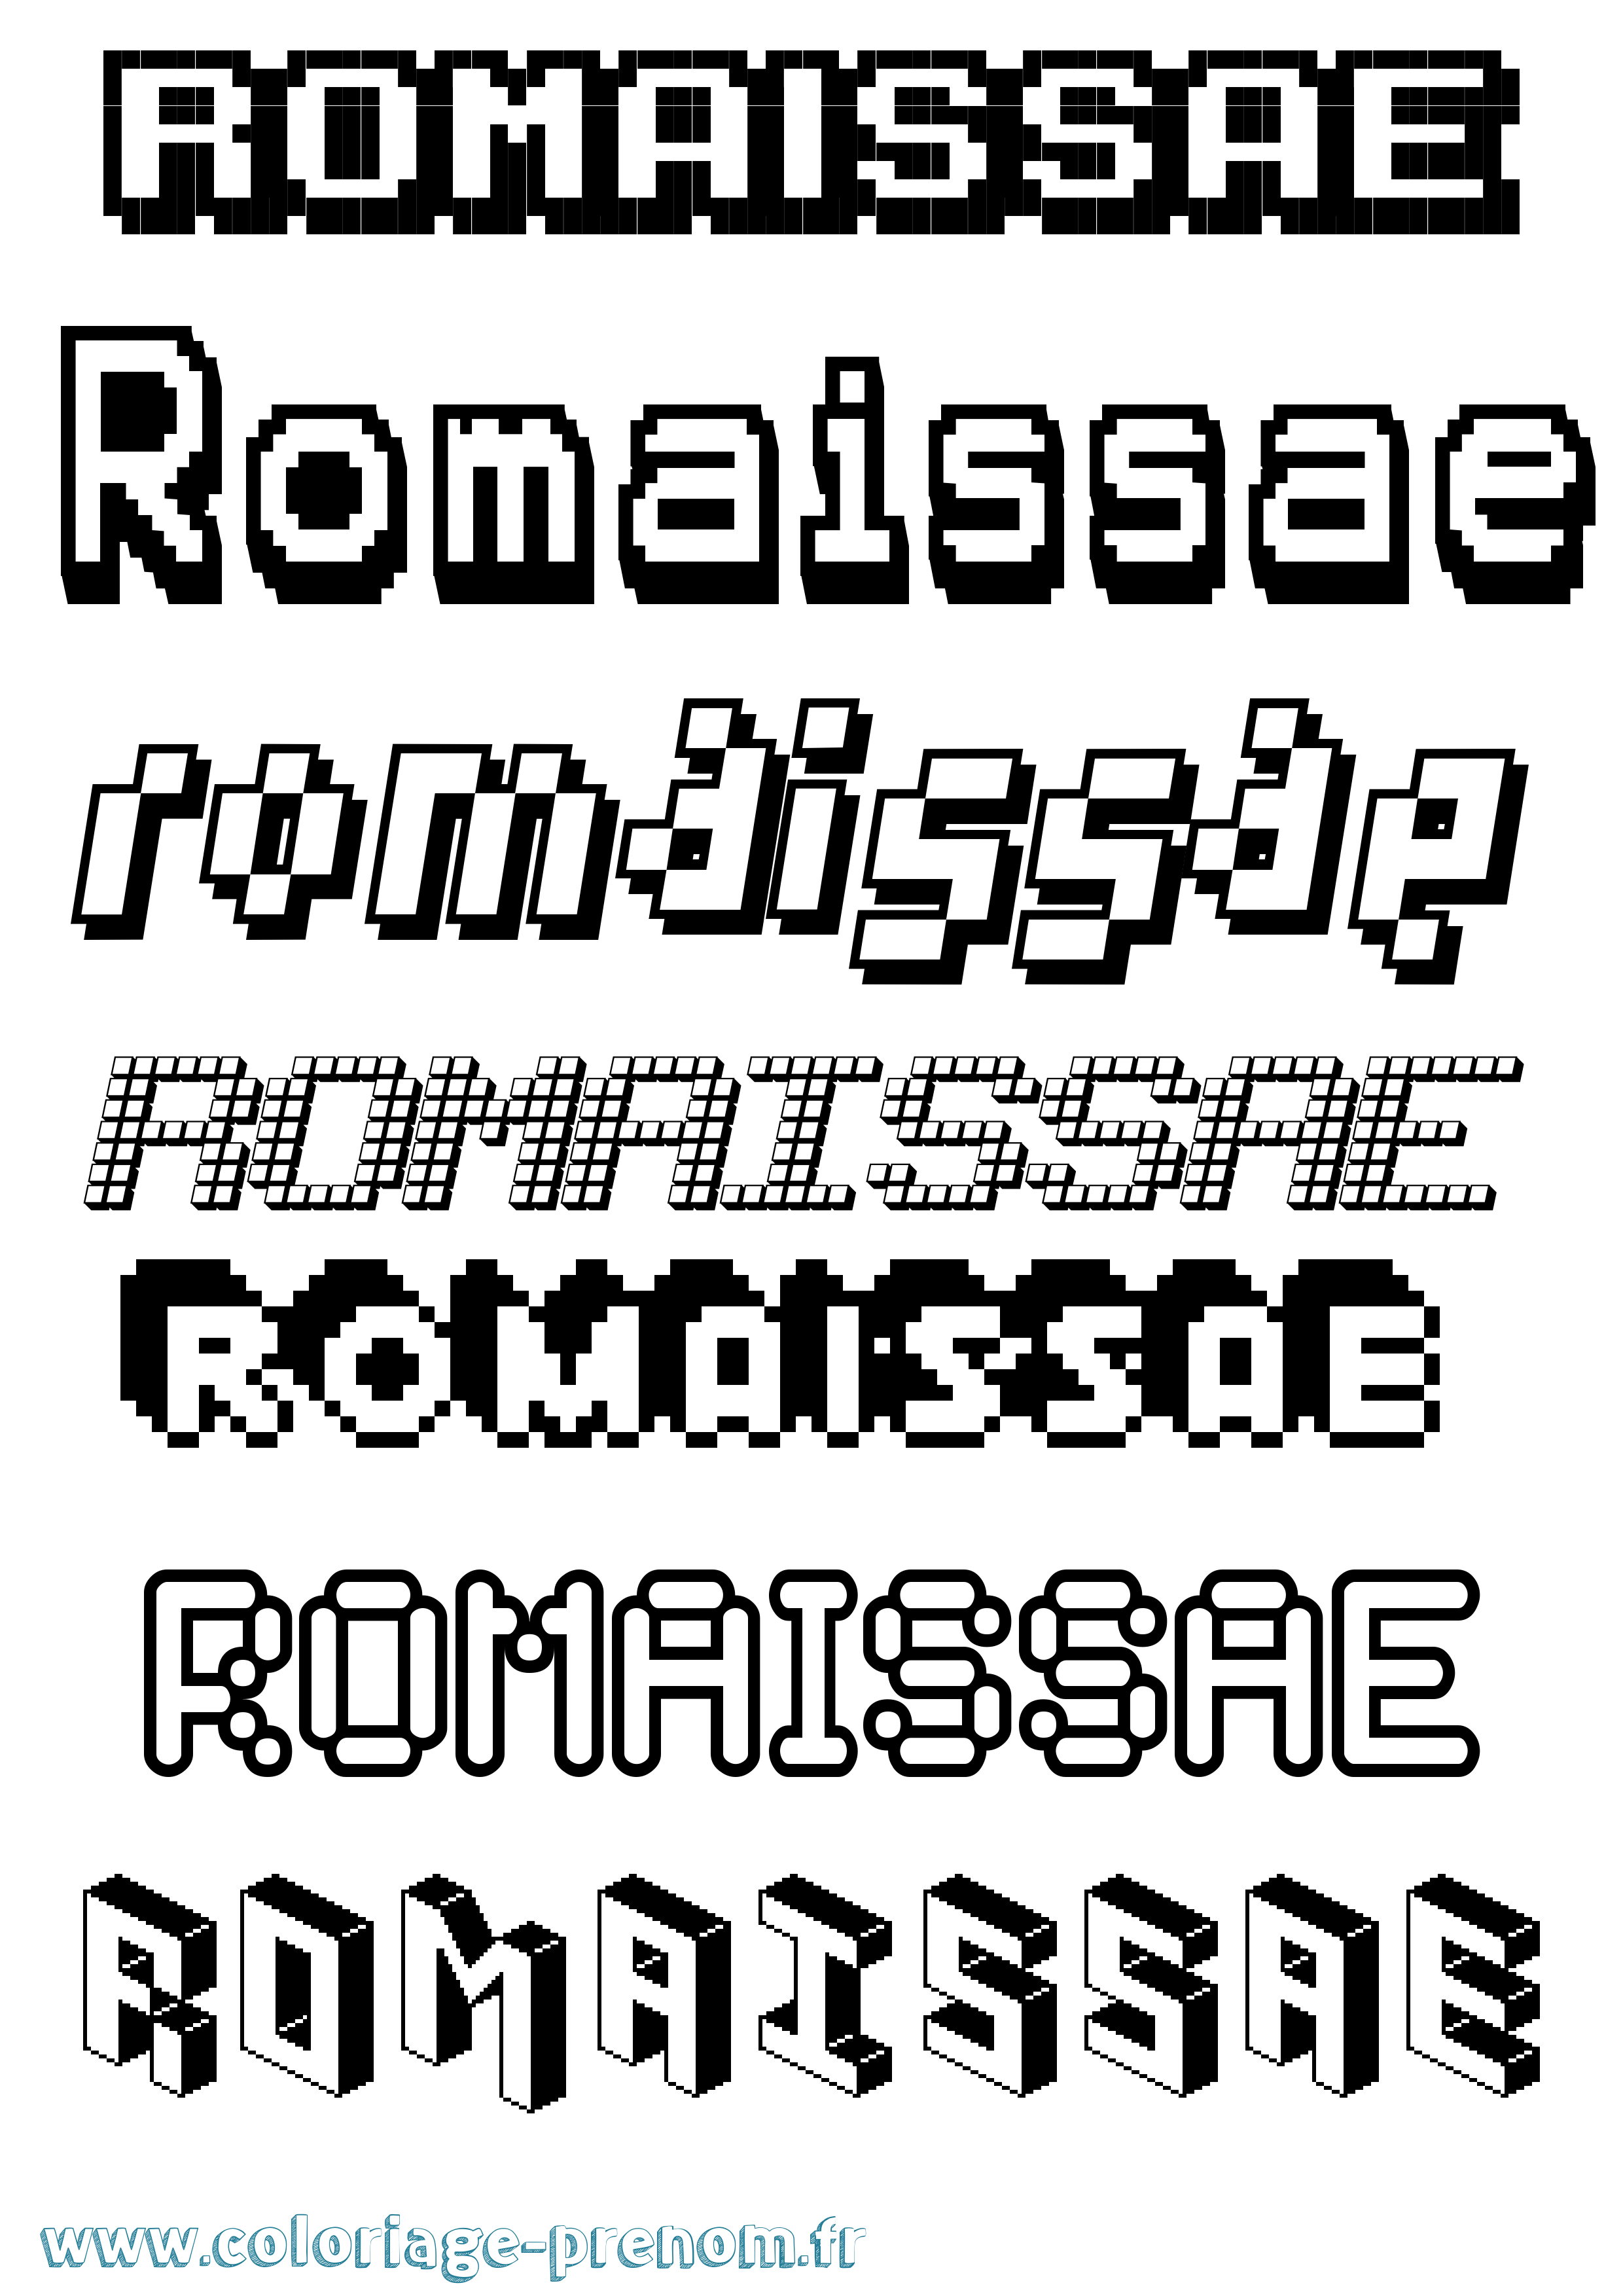 Coloriage prénom Romaissae Pixel